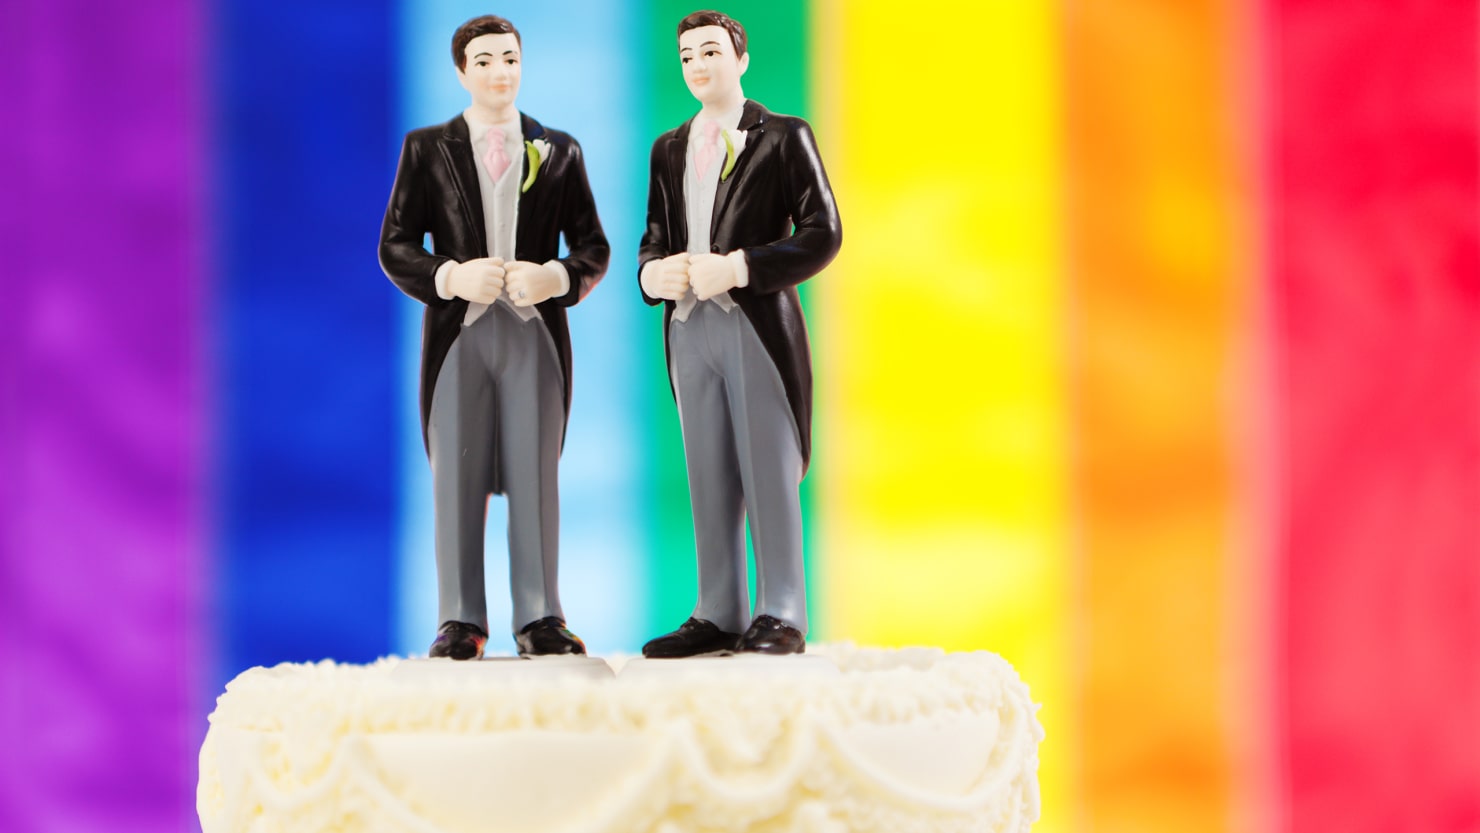 Prefeitura de São Paulo fará cerimônia coletiva de casamento gay